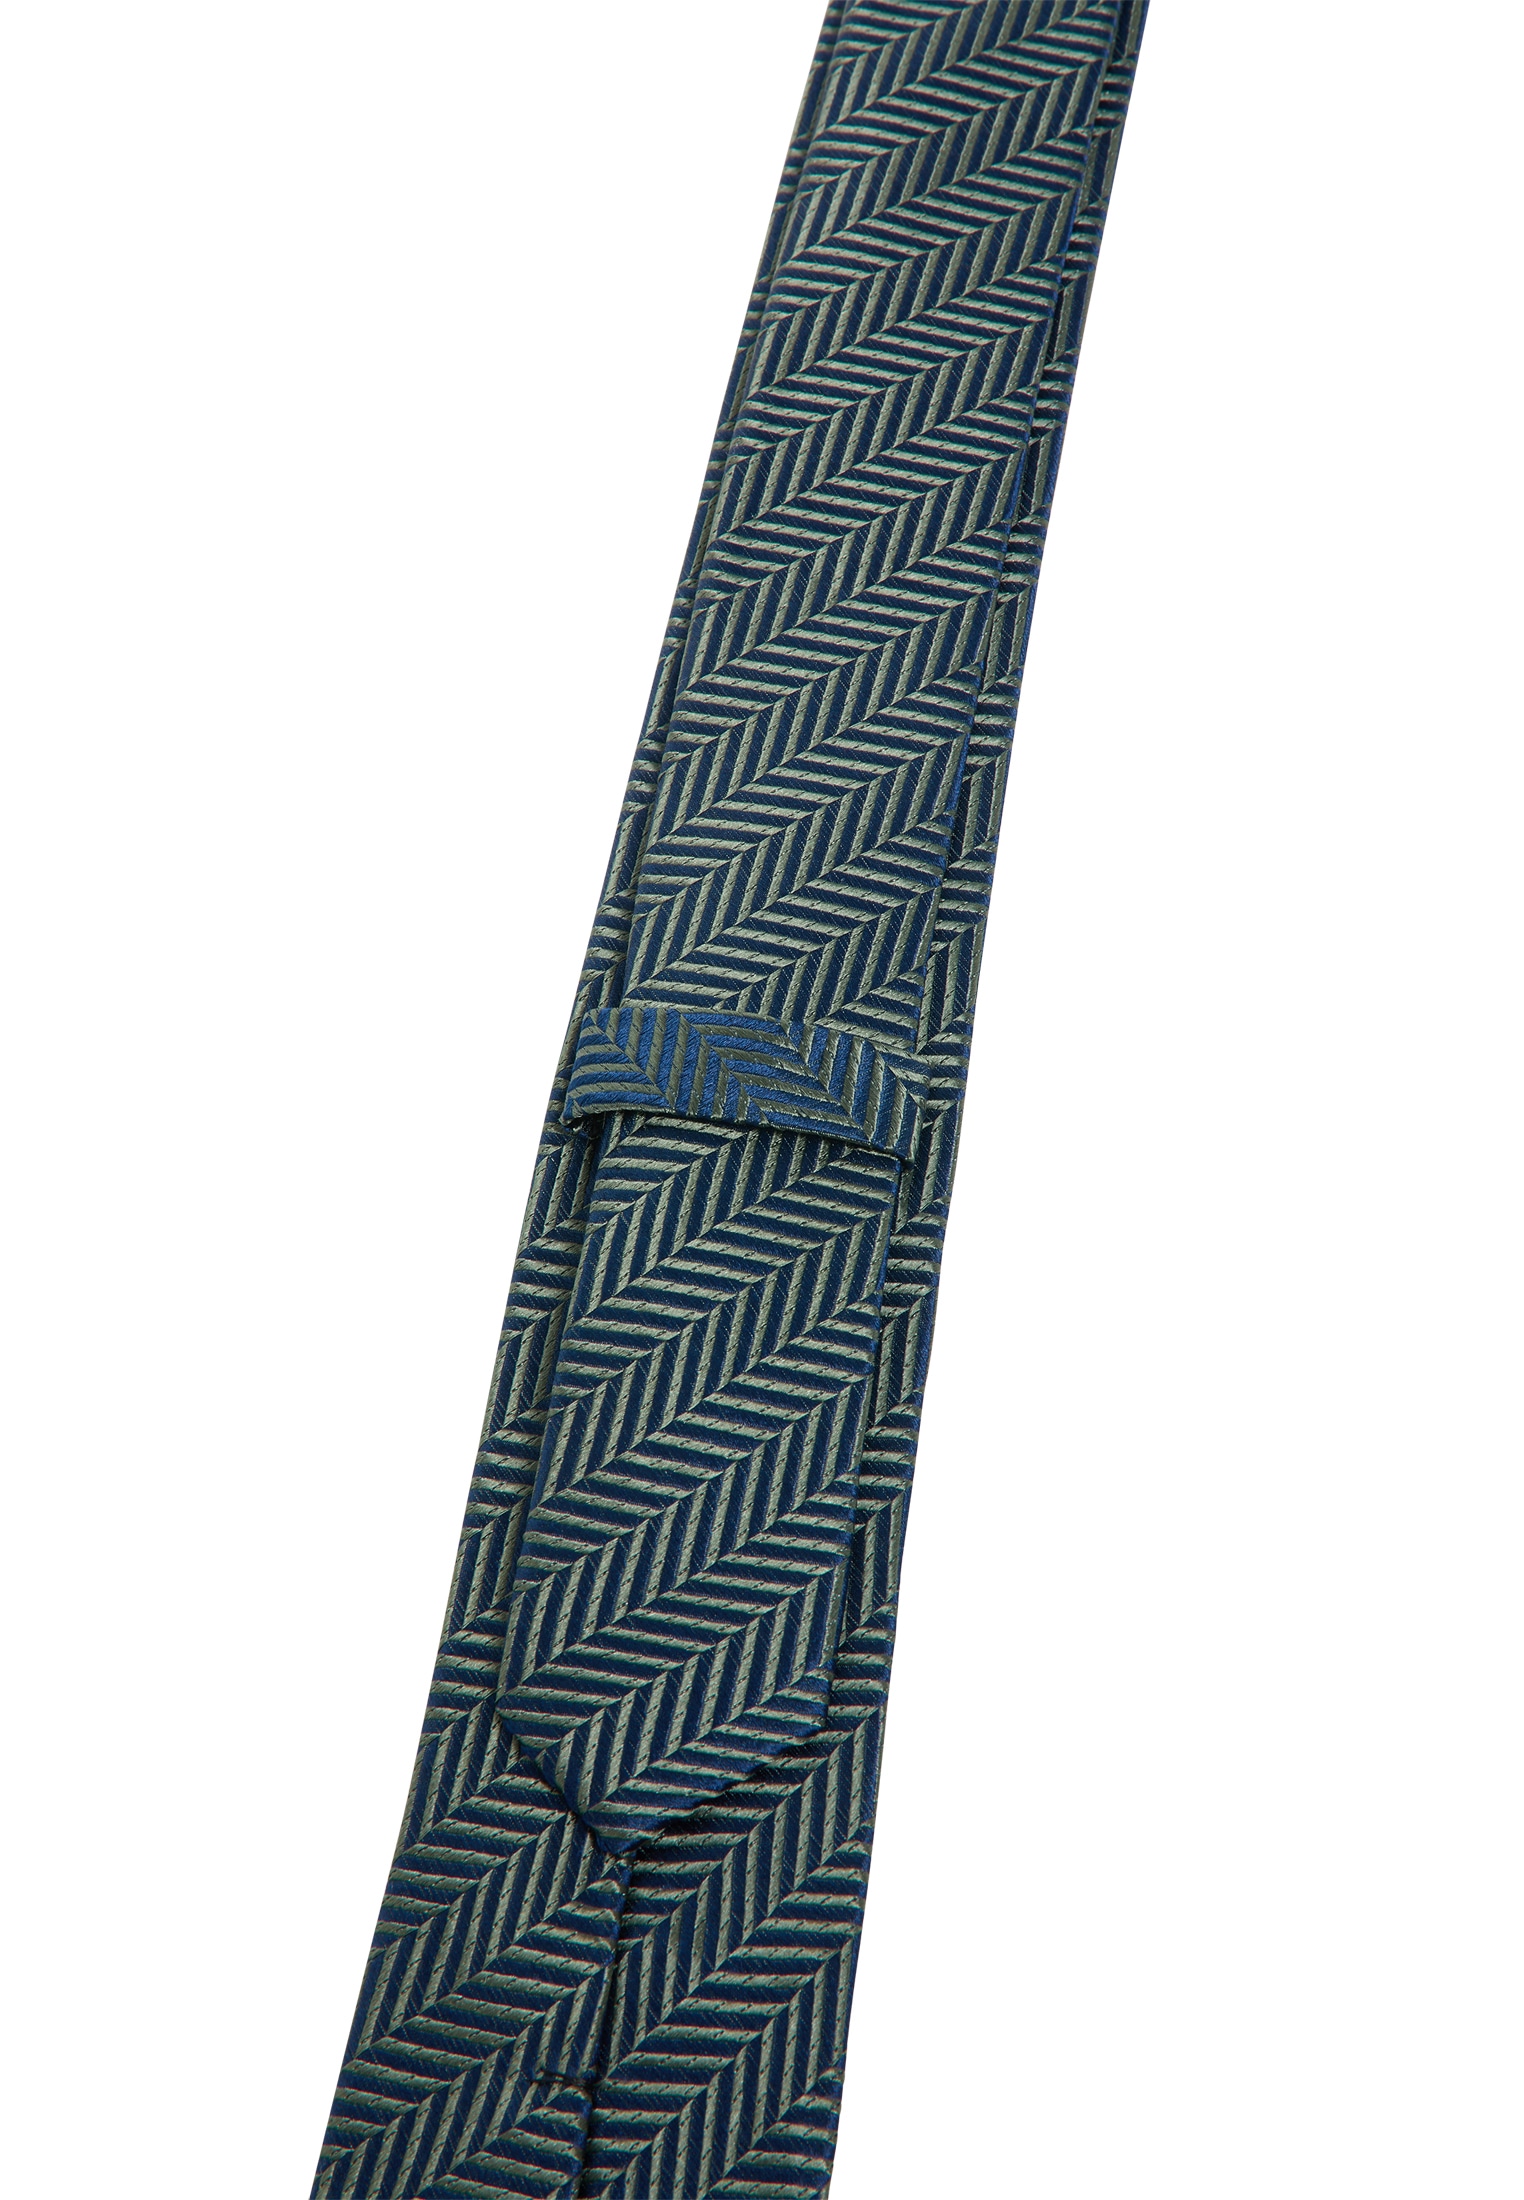 Eterna Krawatte online bei OTTO